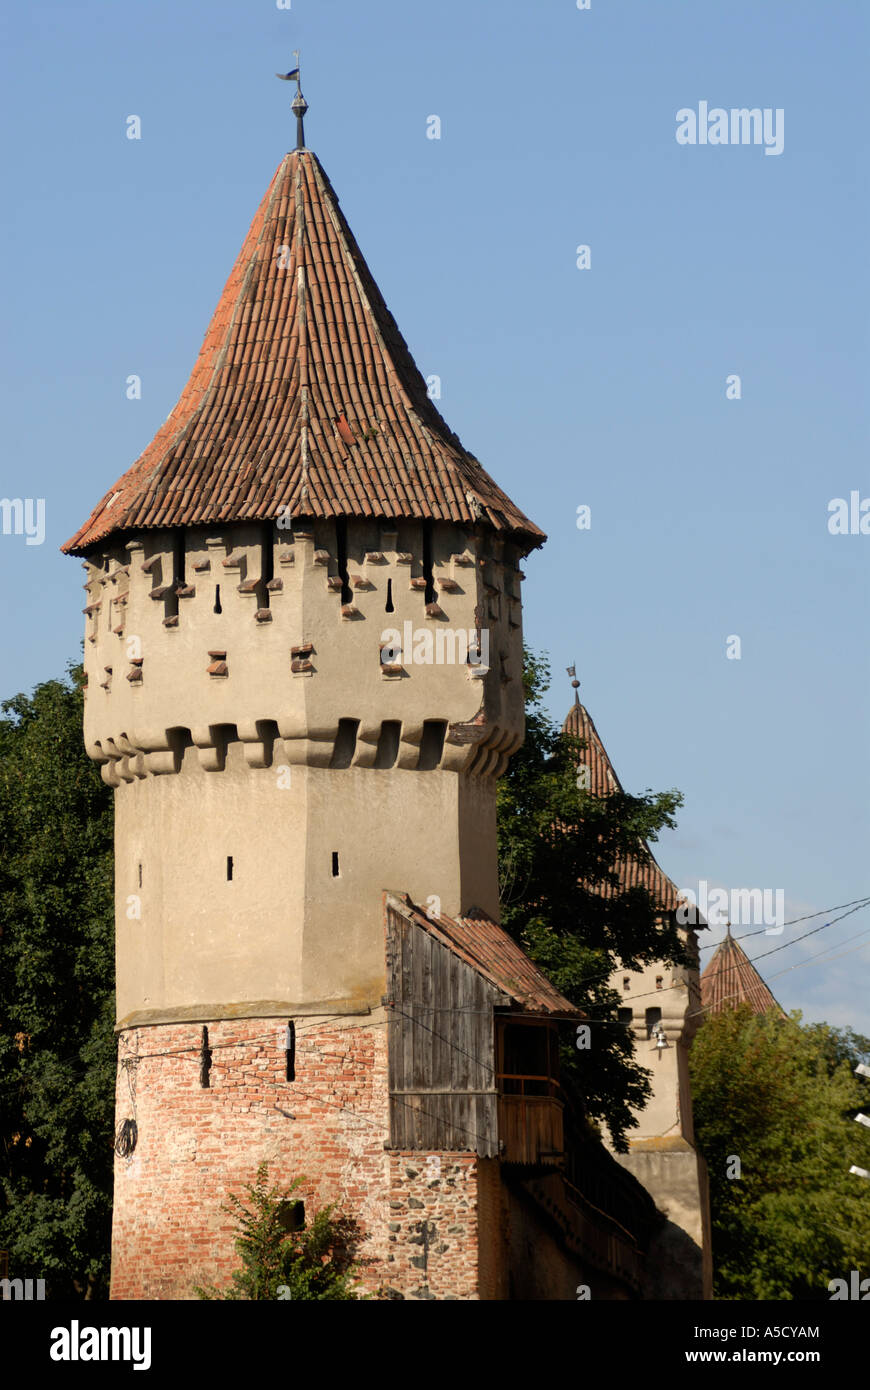 Roumanie Sibiu. Capitale européenne de la Culture 2007. Remparts de la ville. Caprenters tower. Banque D'Images